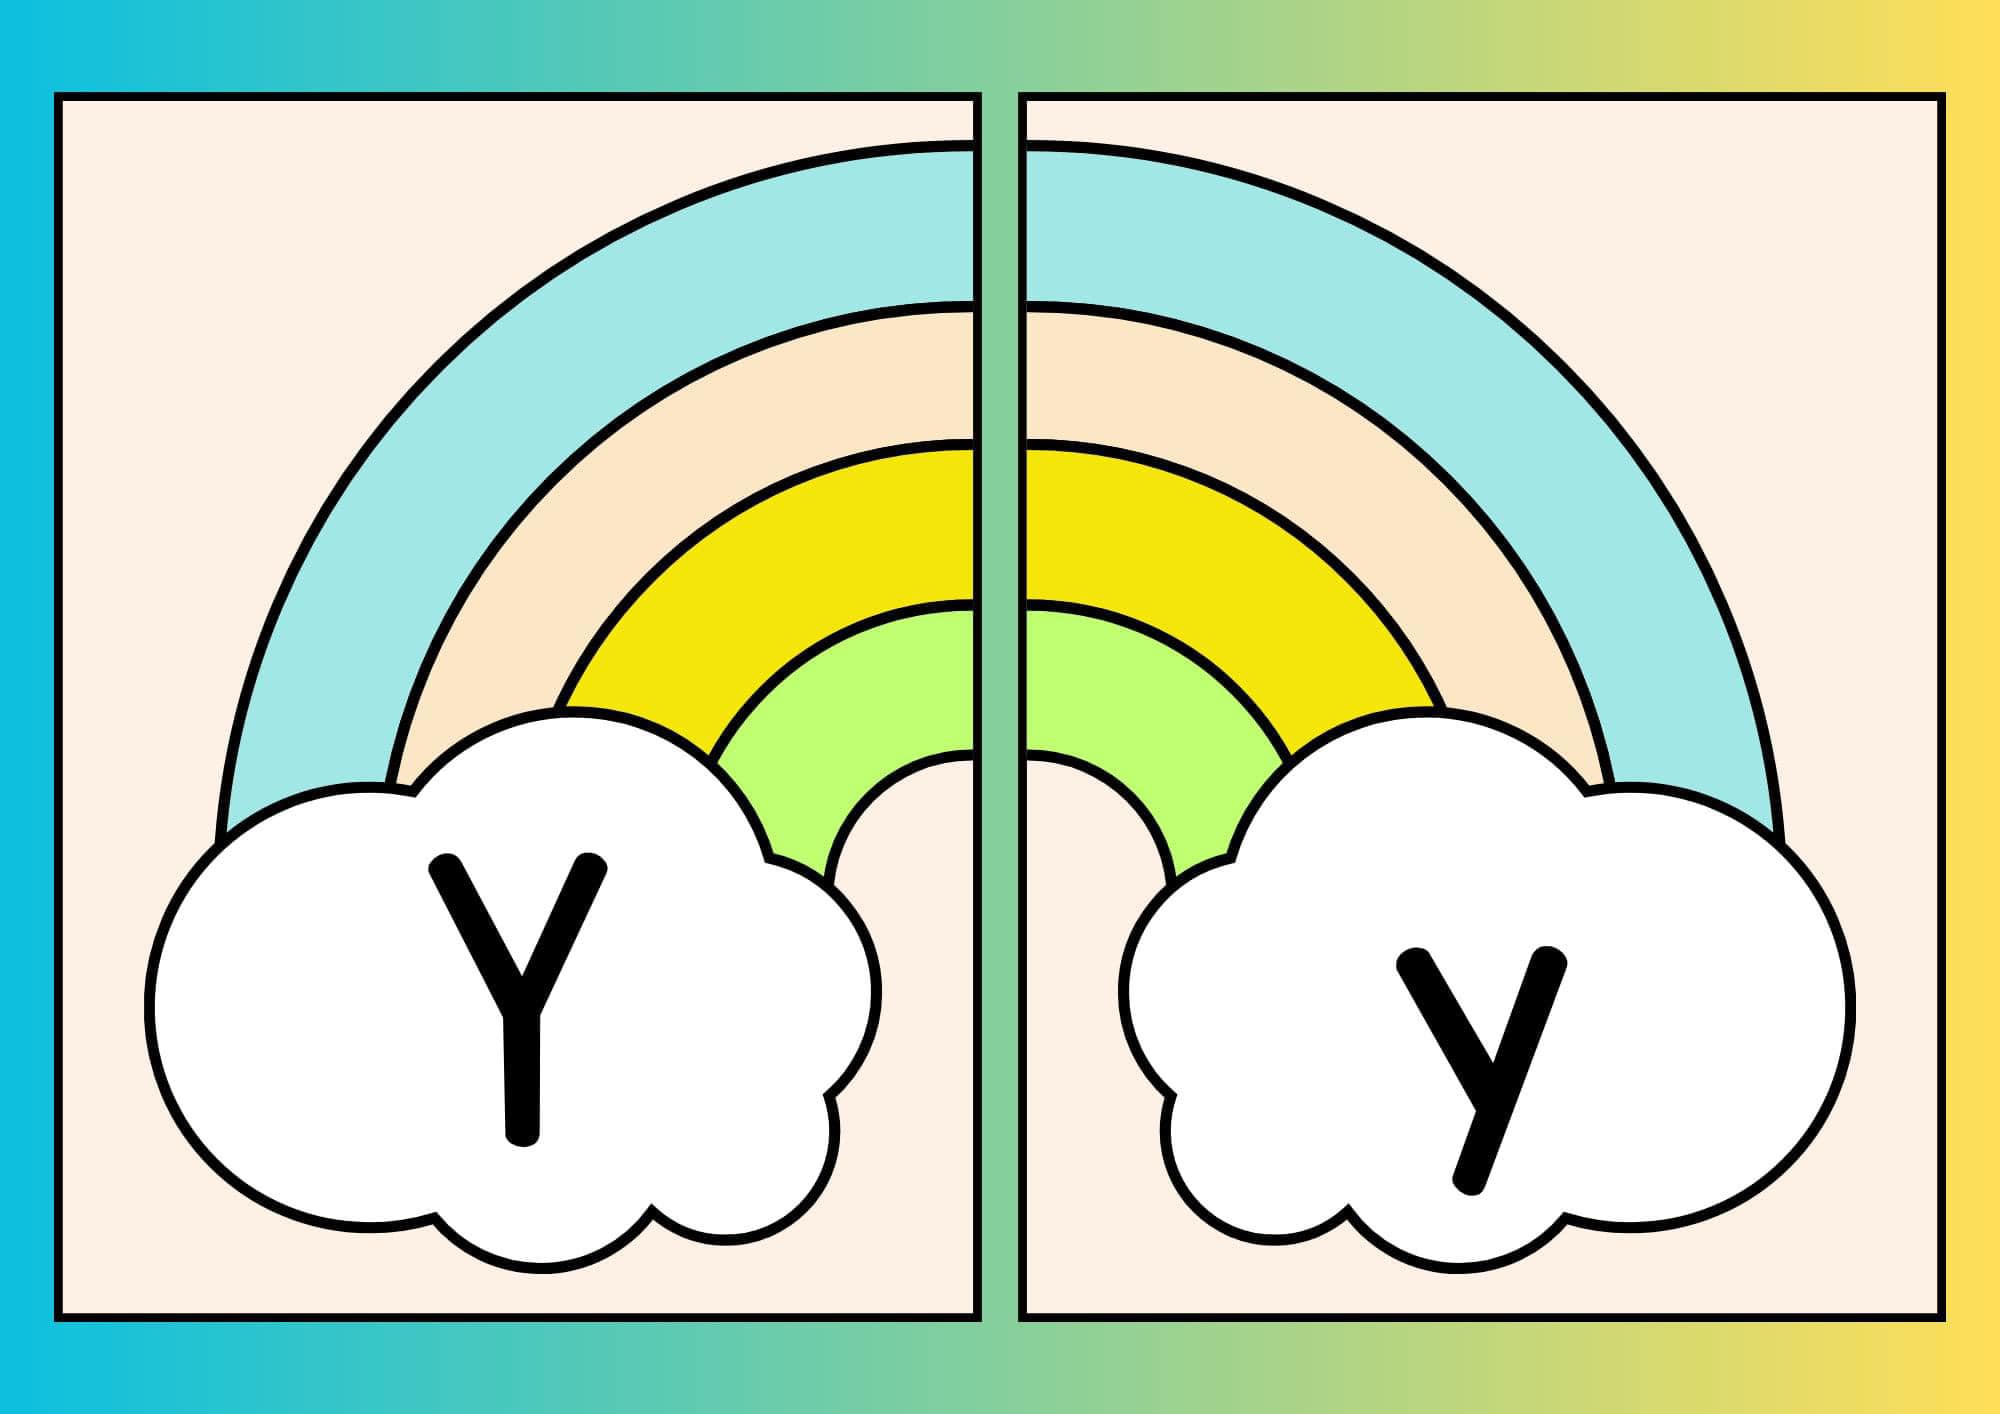 Alfabeto arco íris Yy